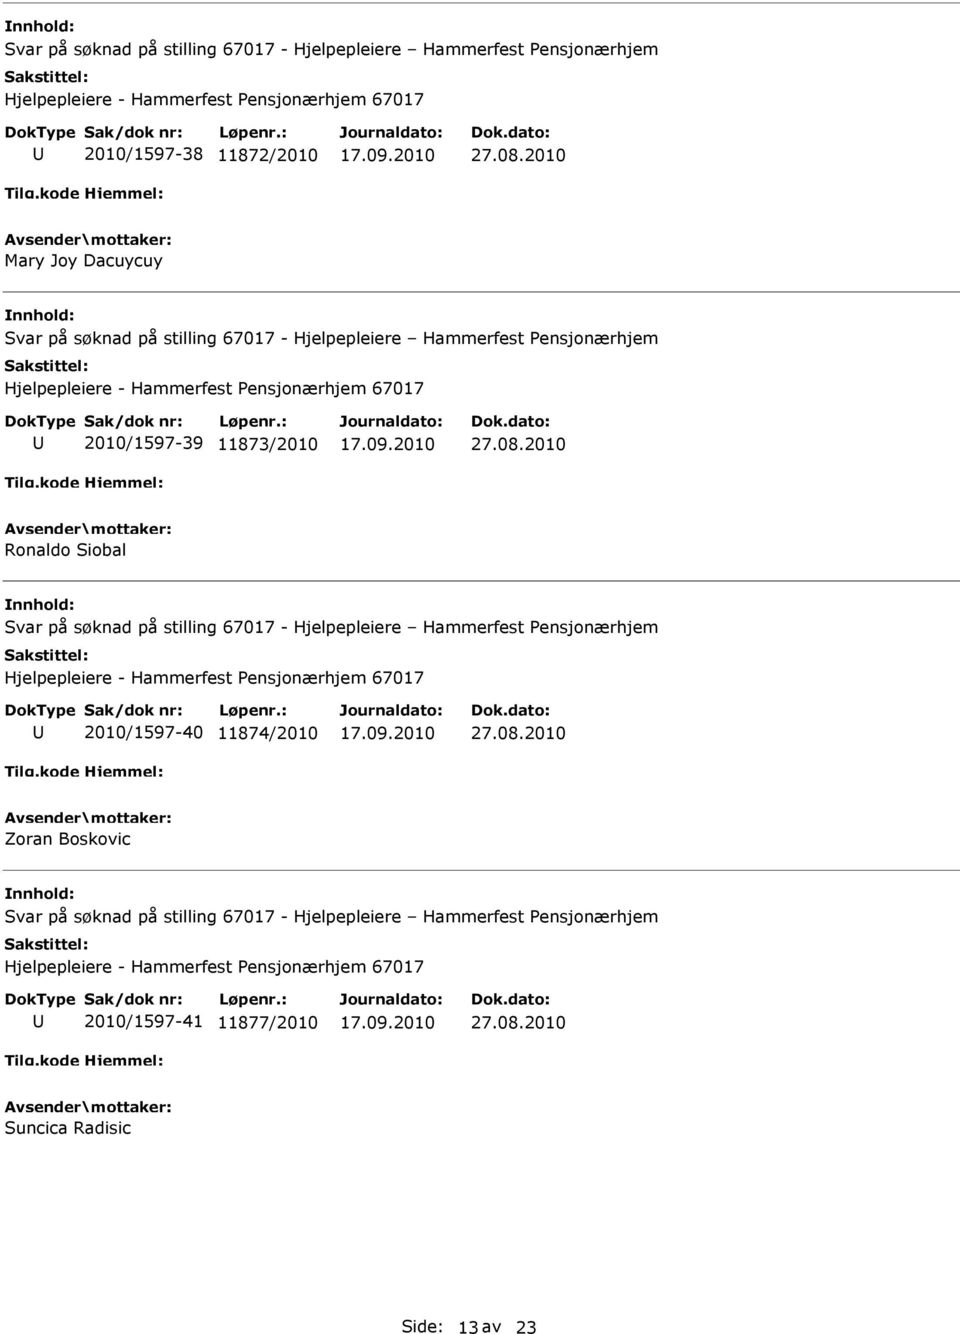 på søknad på stilling 67017 - Hjelpepleiere Hammerfest Pensjonærhjem 2010/1597-40 11874/2010 Zoran Boskovic Svar på